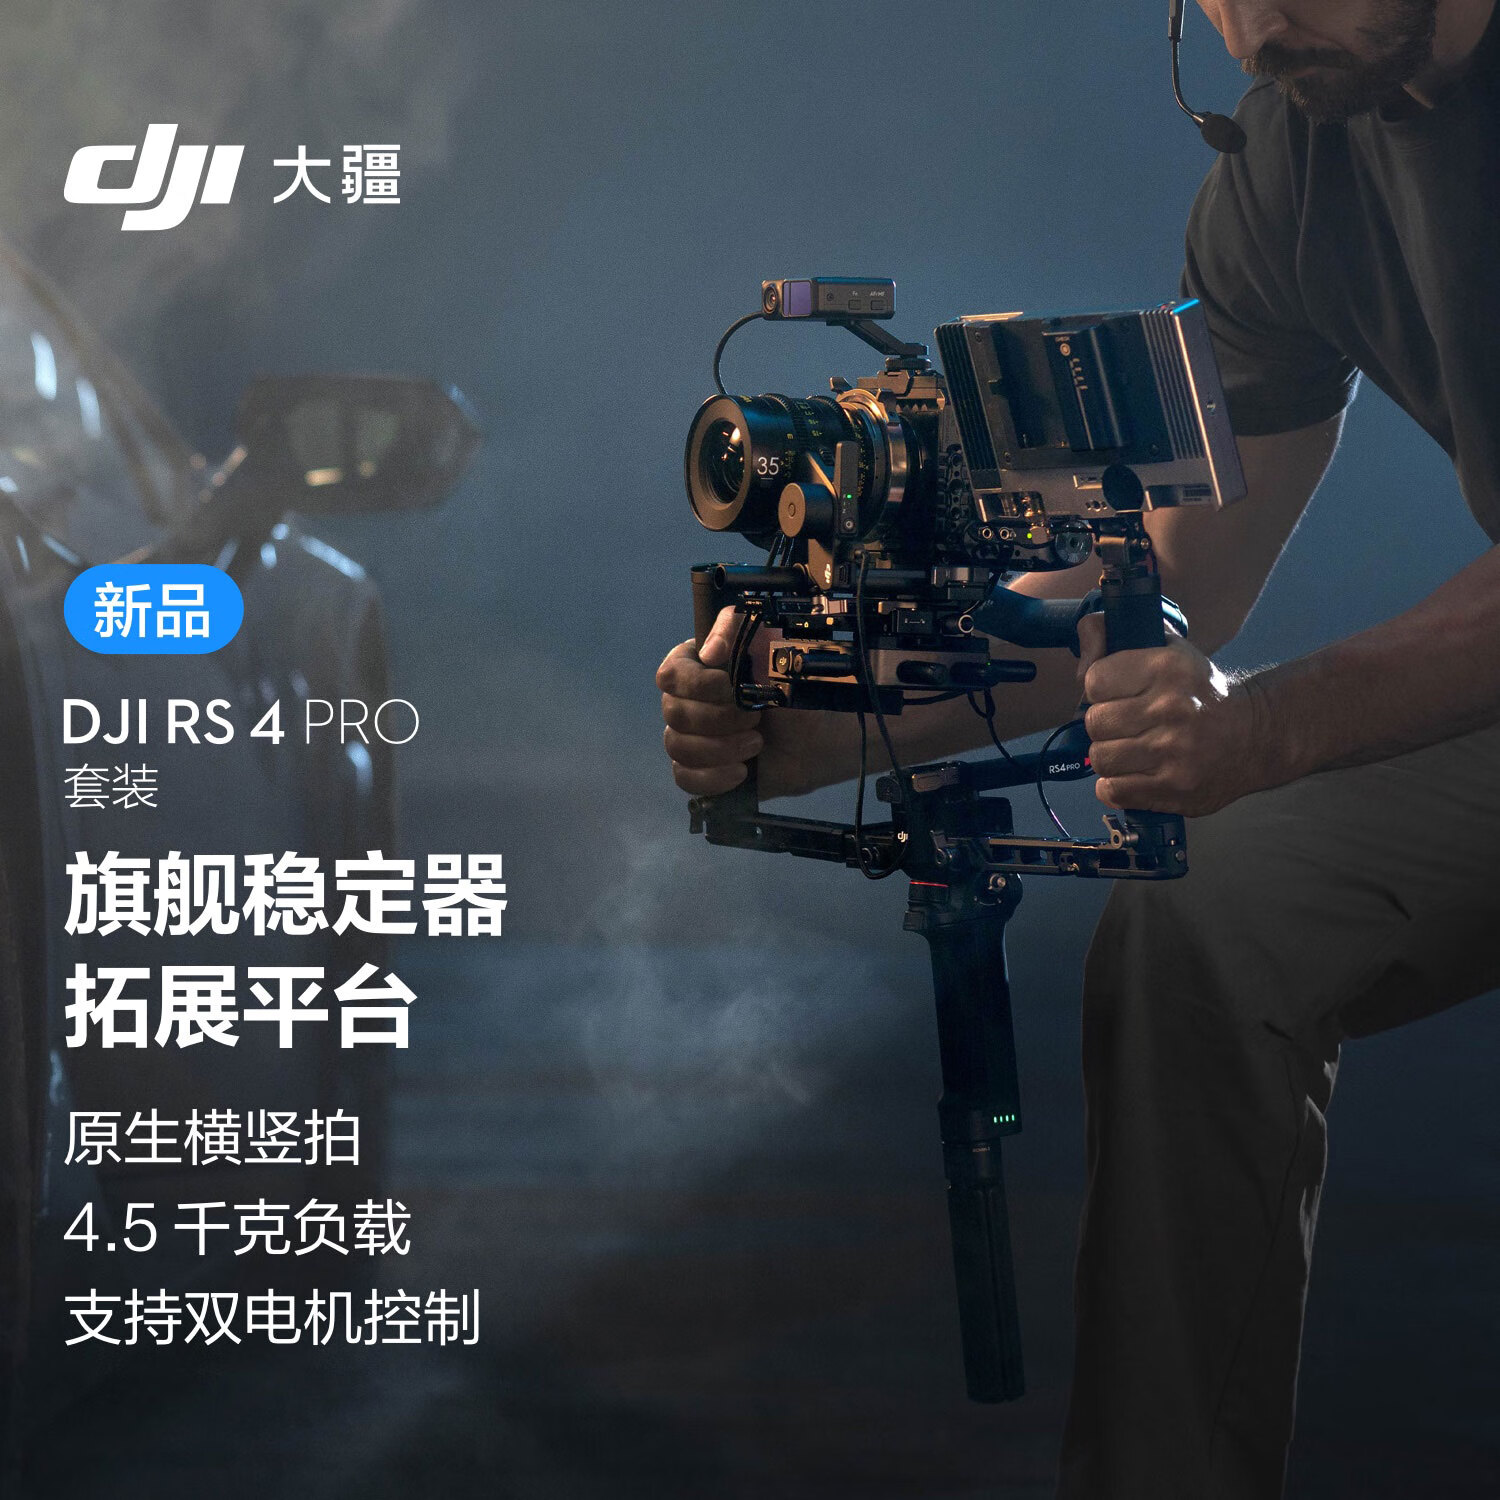 大疆DJI RS 4 Pro 套装 如影手持云台稳定器 三轴防抖手持拍摄稳定器 4.5千克负载 旗舰专业单反云台